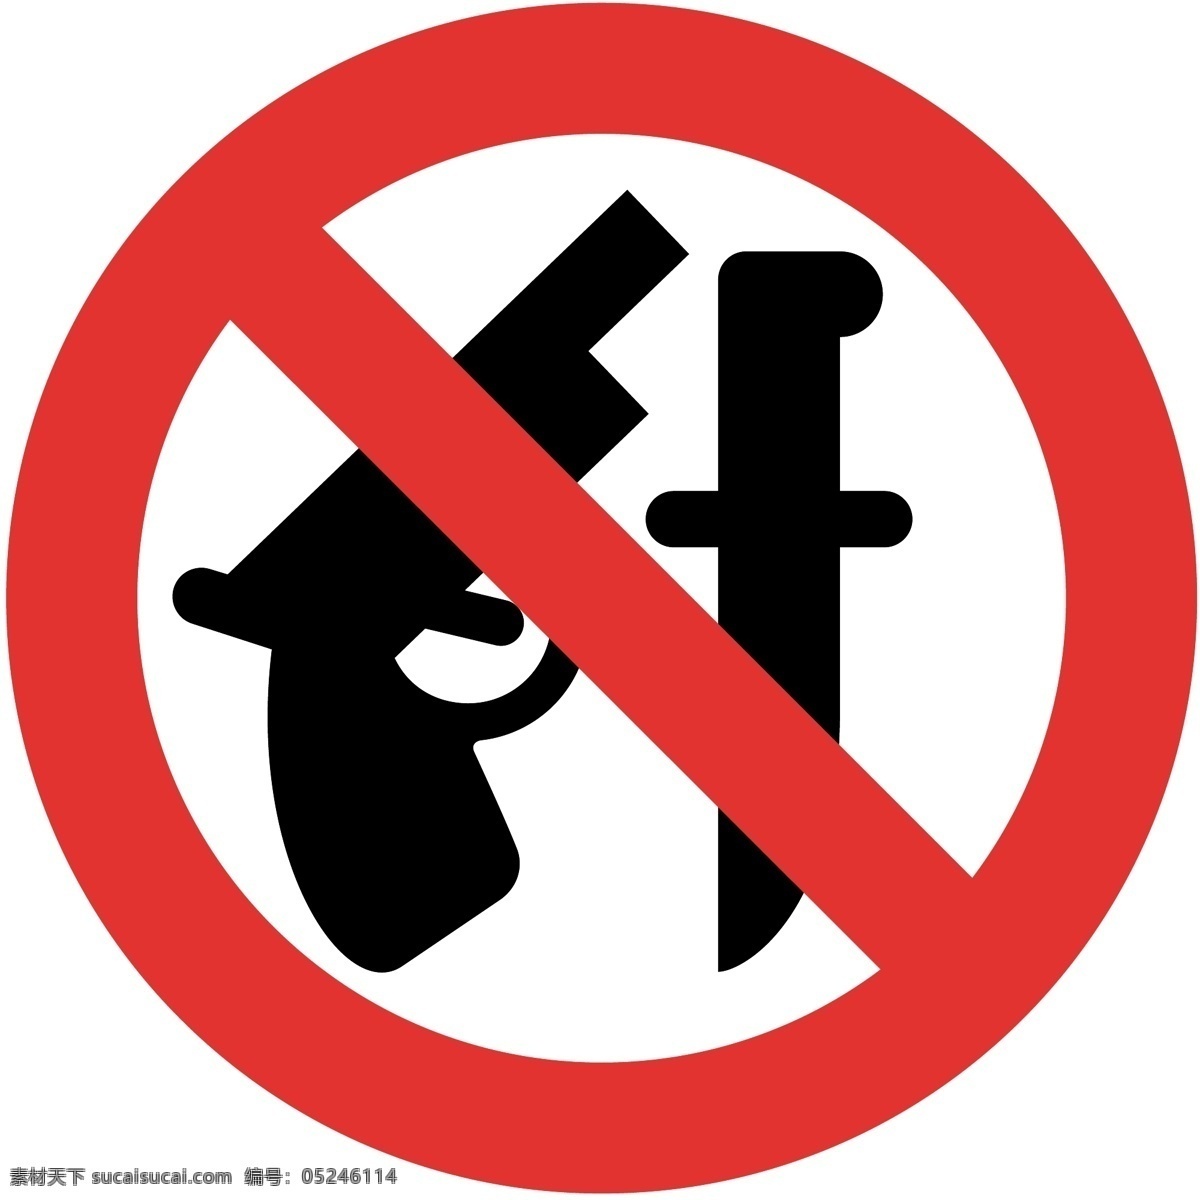 禁止 携带 管制 刀具 禁止携带刀具 禁止携带 警告 标志图标 公共标识标志